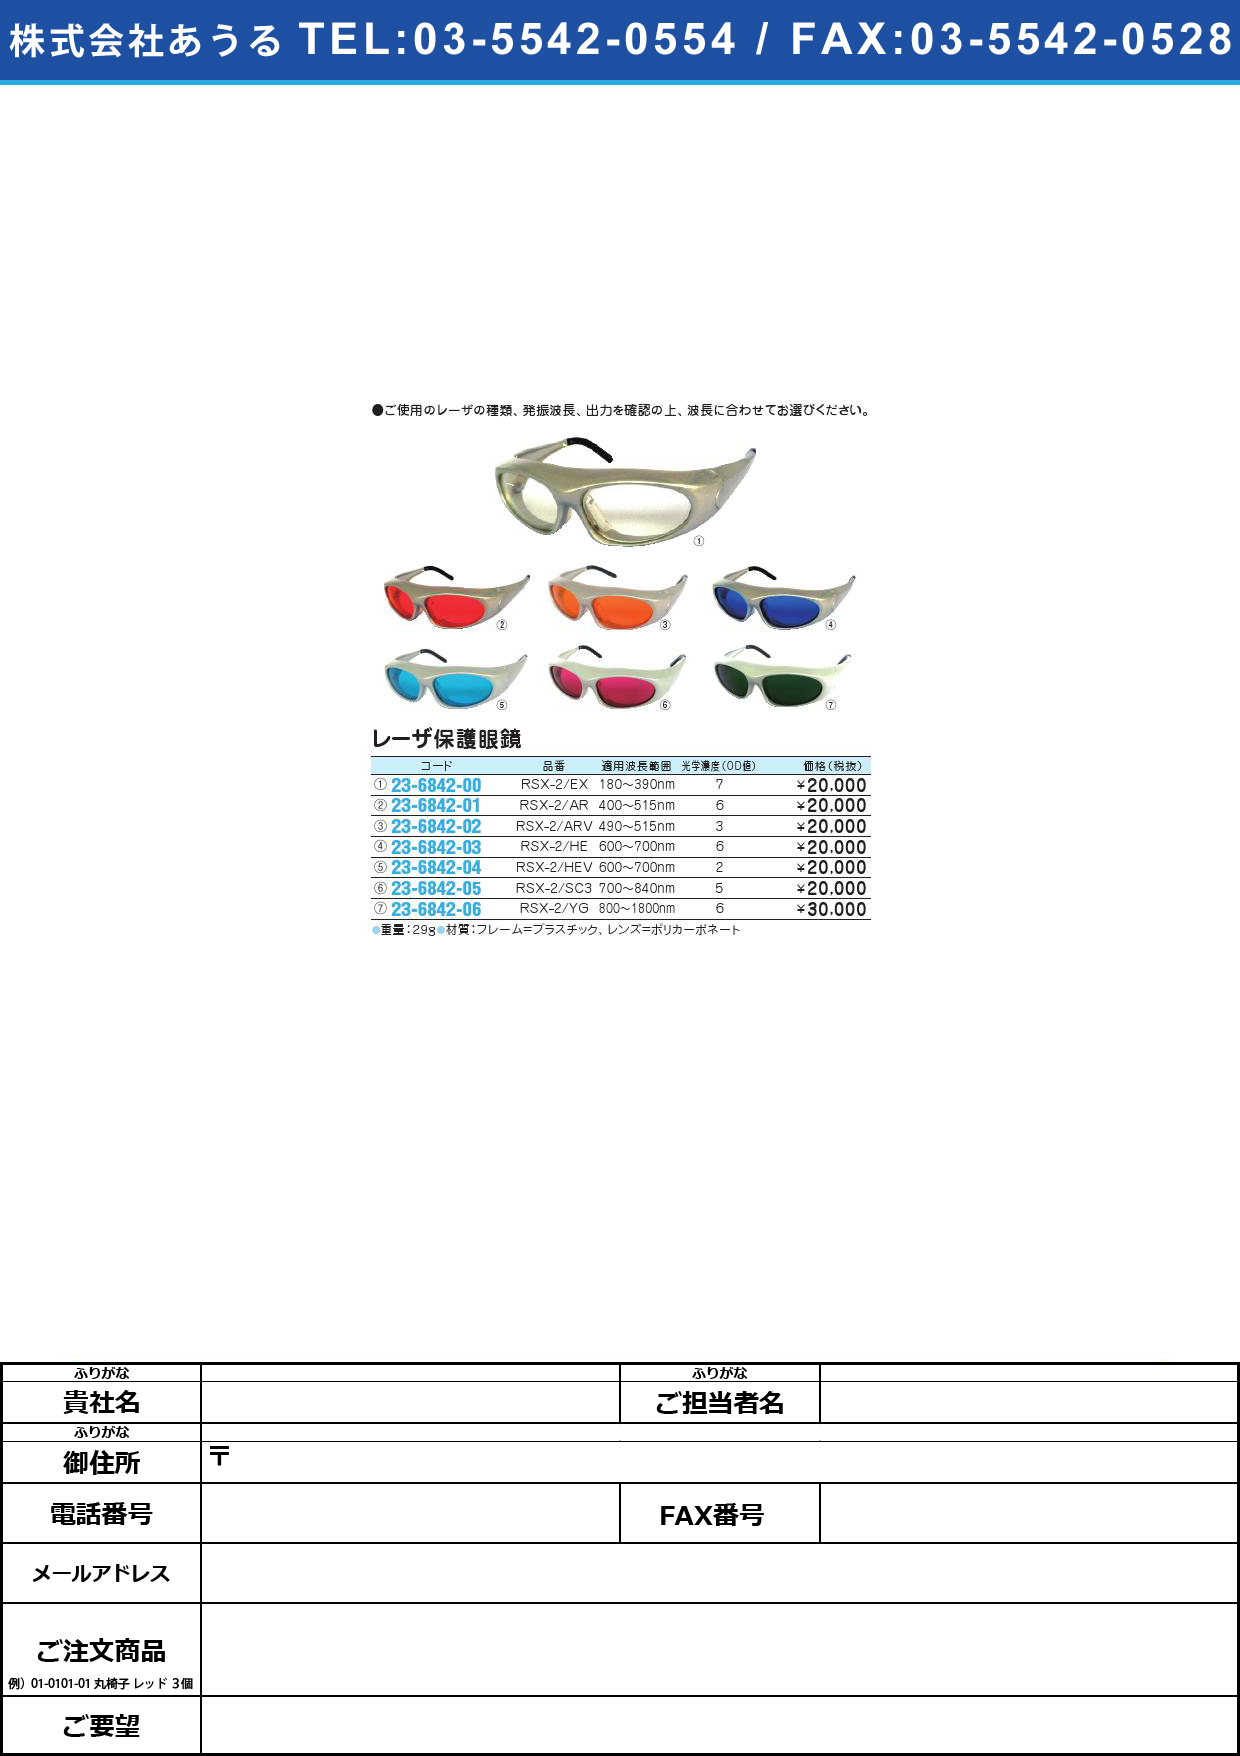 (23-6842-02)レーザ保護眼鏡 RSX-2/ARVﾚｰｻﾞﾎｺﾞﾒｶﾞﾈ(23-6842-02)【1個単位】【2013年カタログ商品】